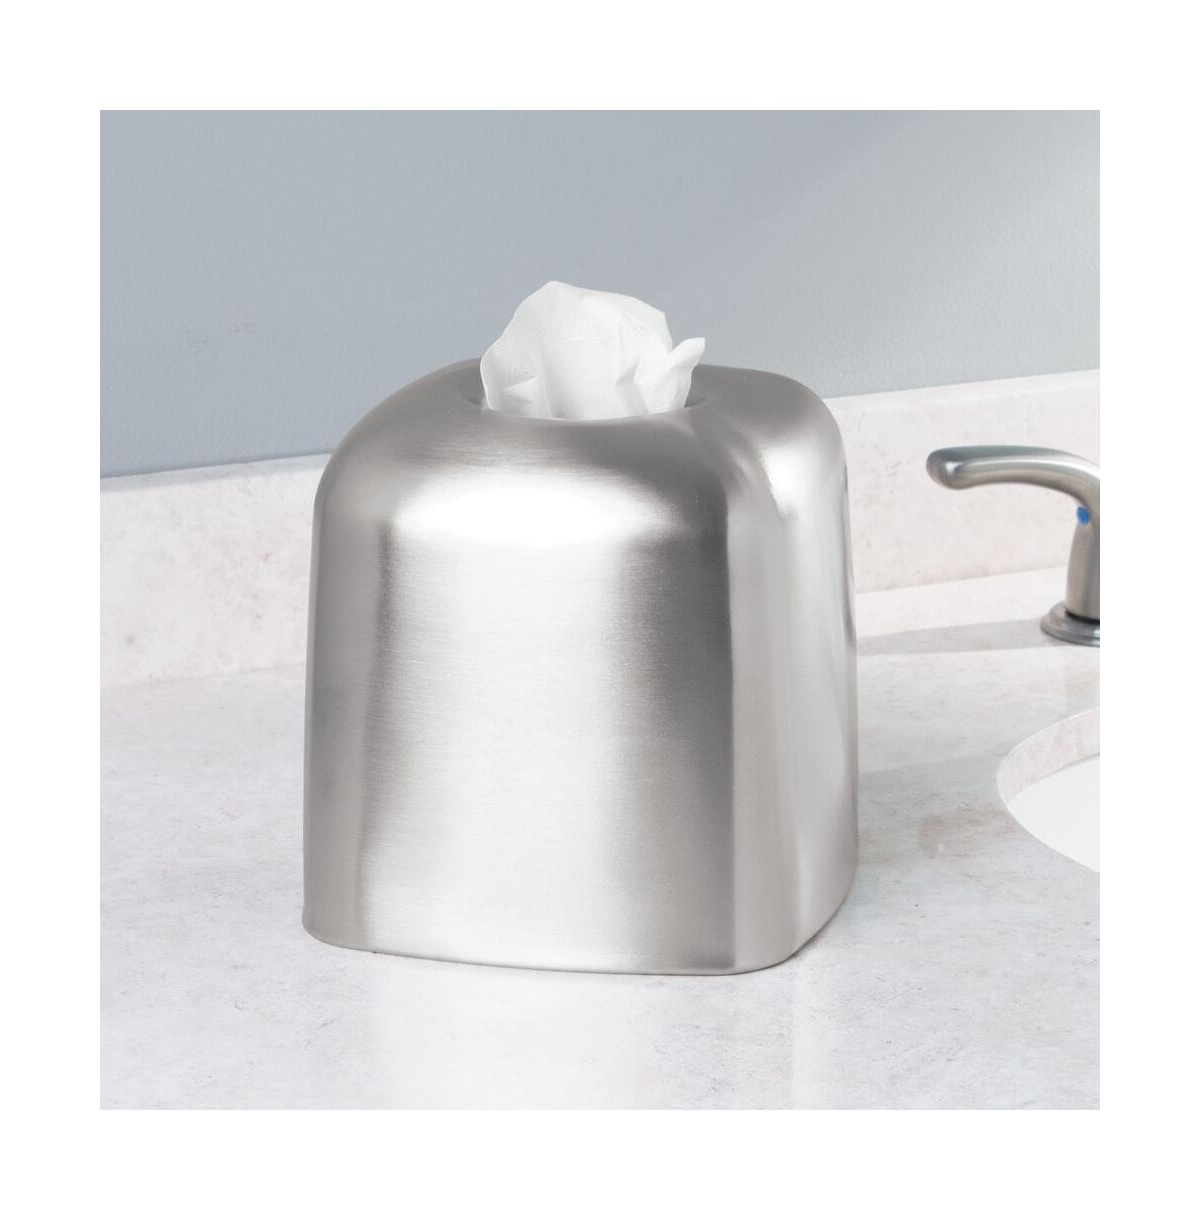 mDesign Metal Over The Tank Toilet Tissue Paper Roll Holder Dispenser - Chrome